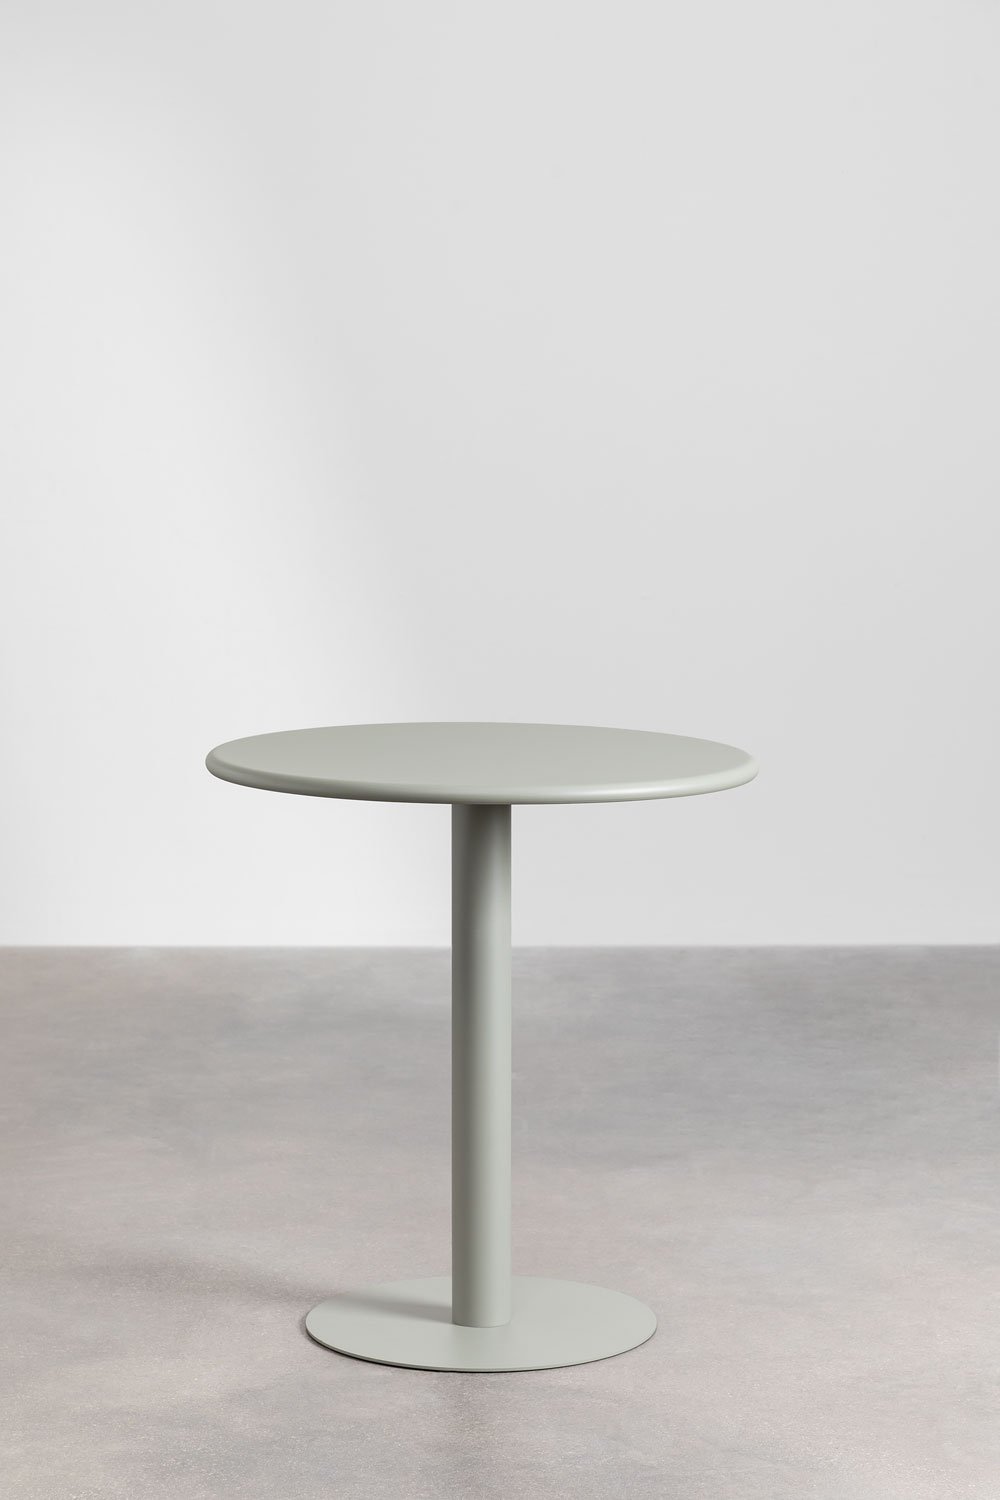 Tavolo da giardino rotondo in metallo (Ø70 cm) Mizzi, immagine della galleria 1